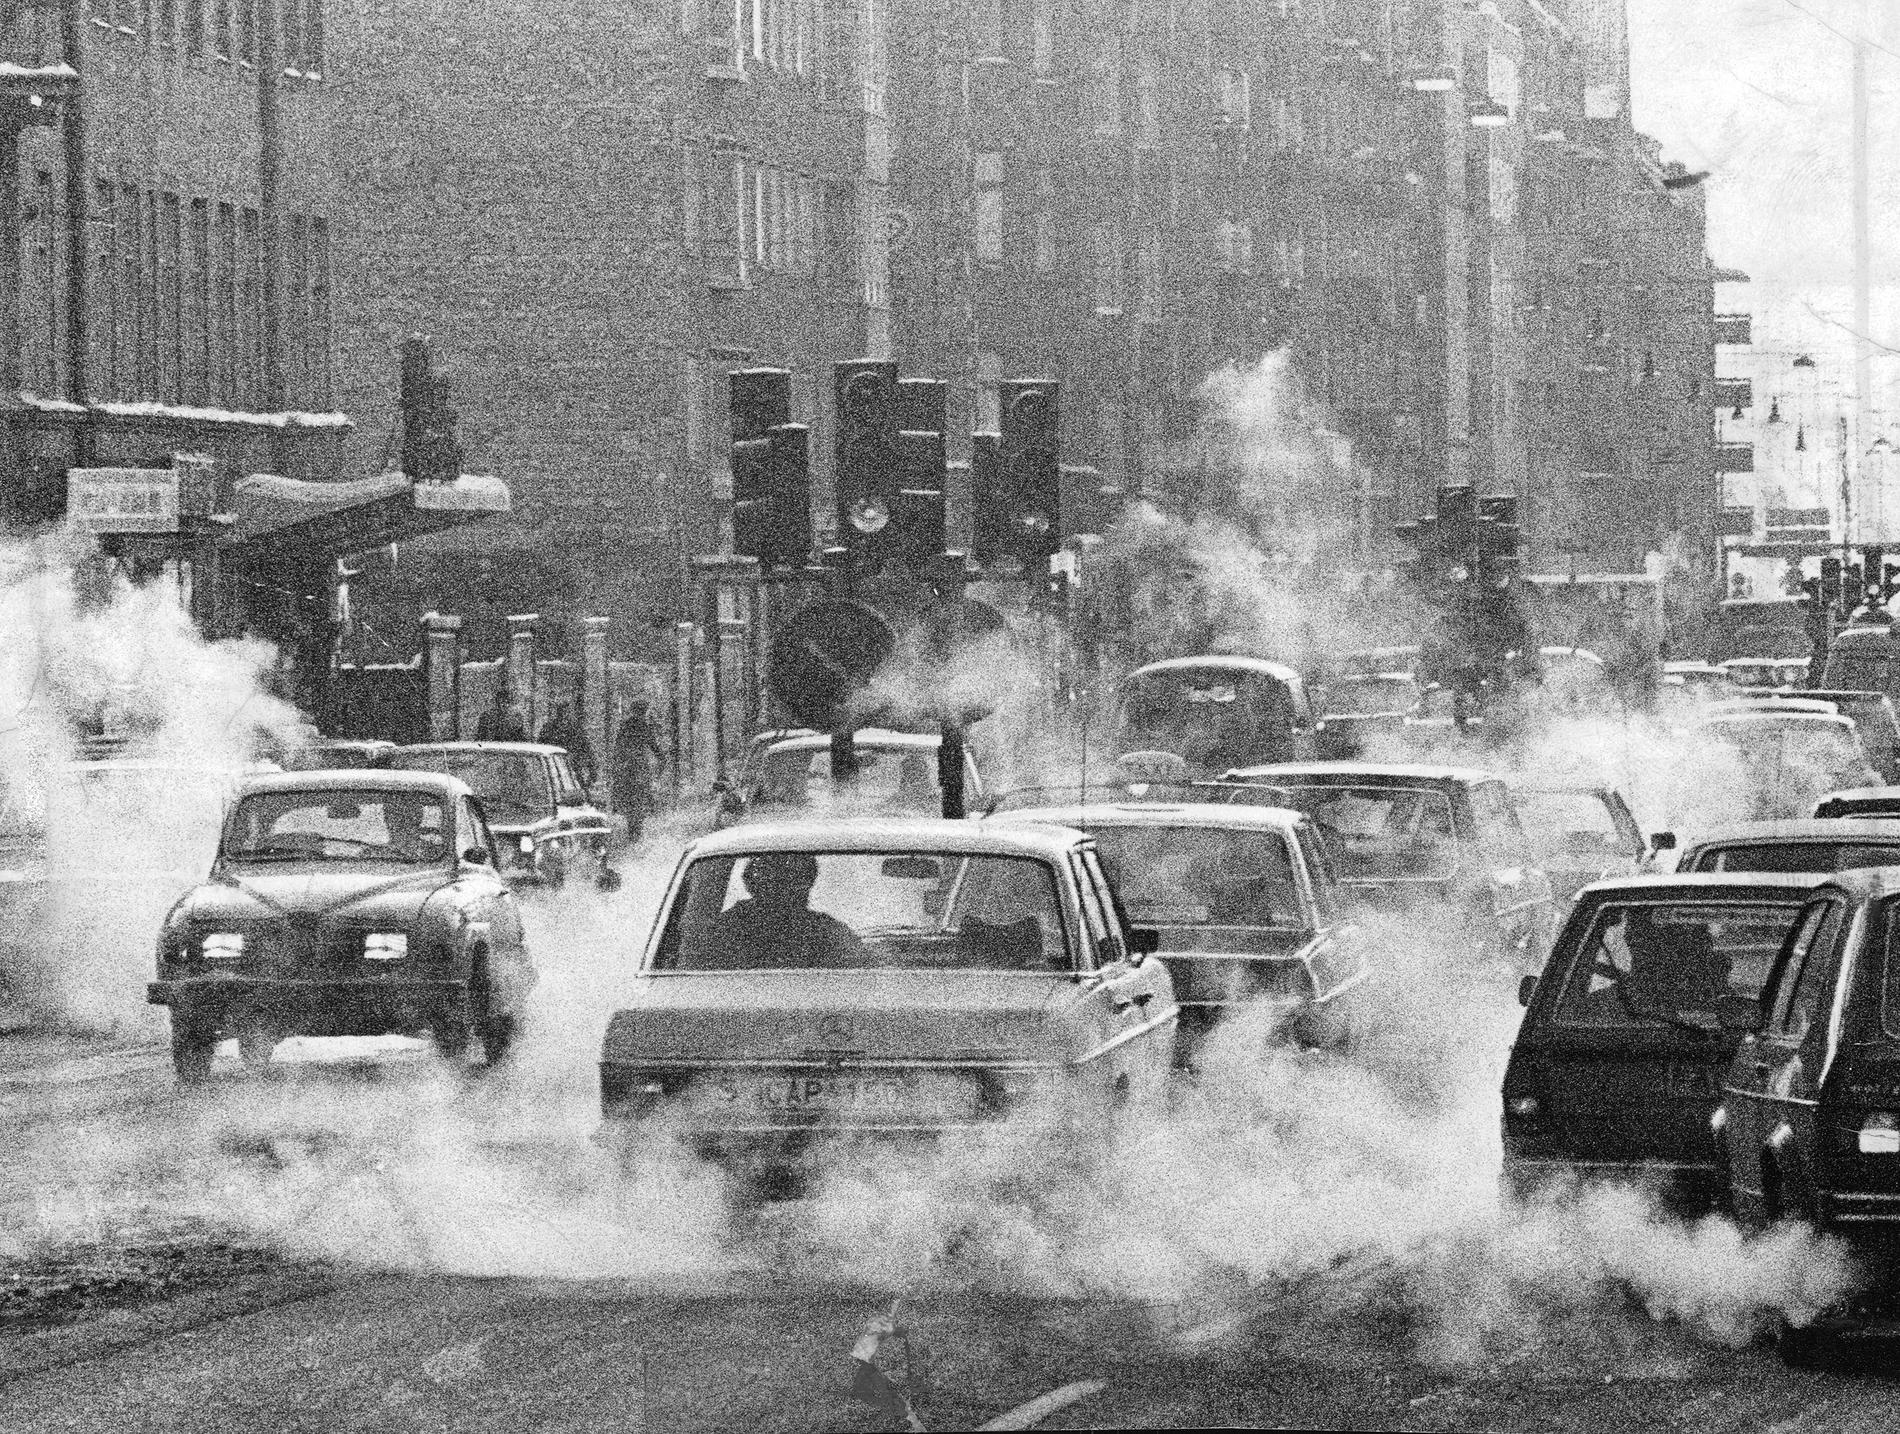 Så här såg det ut på Götgatan i februari 1979.